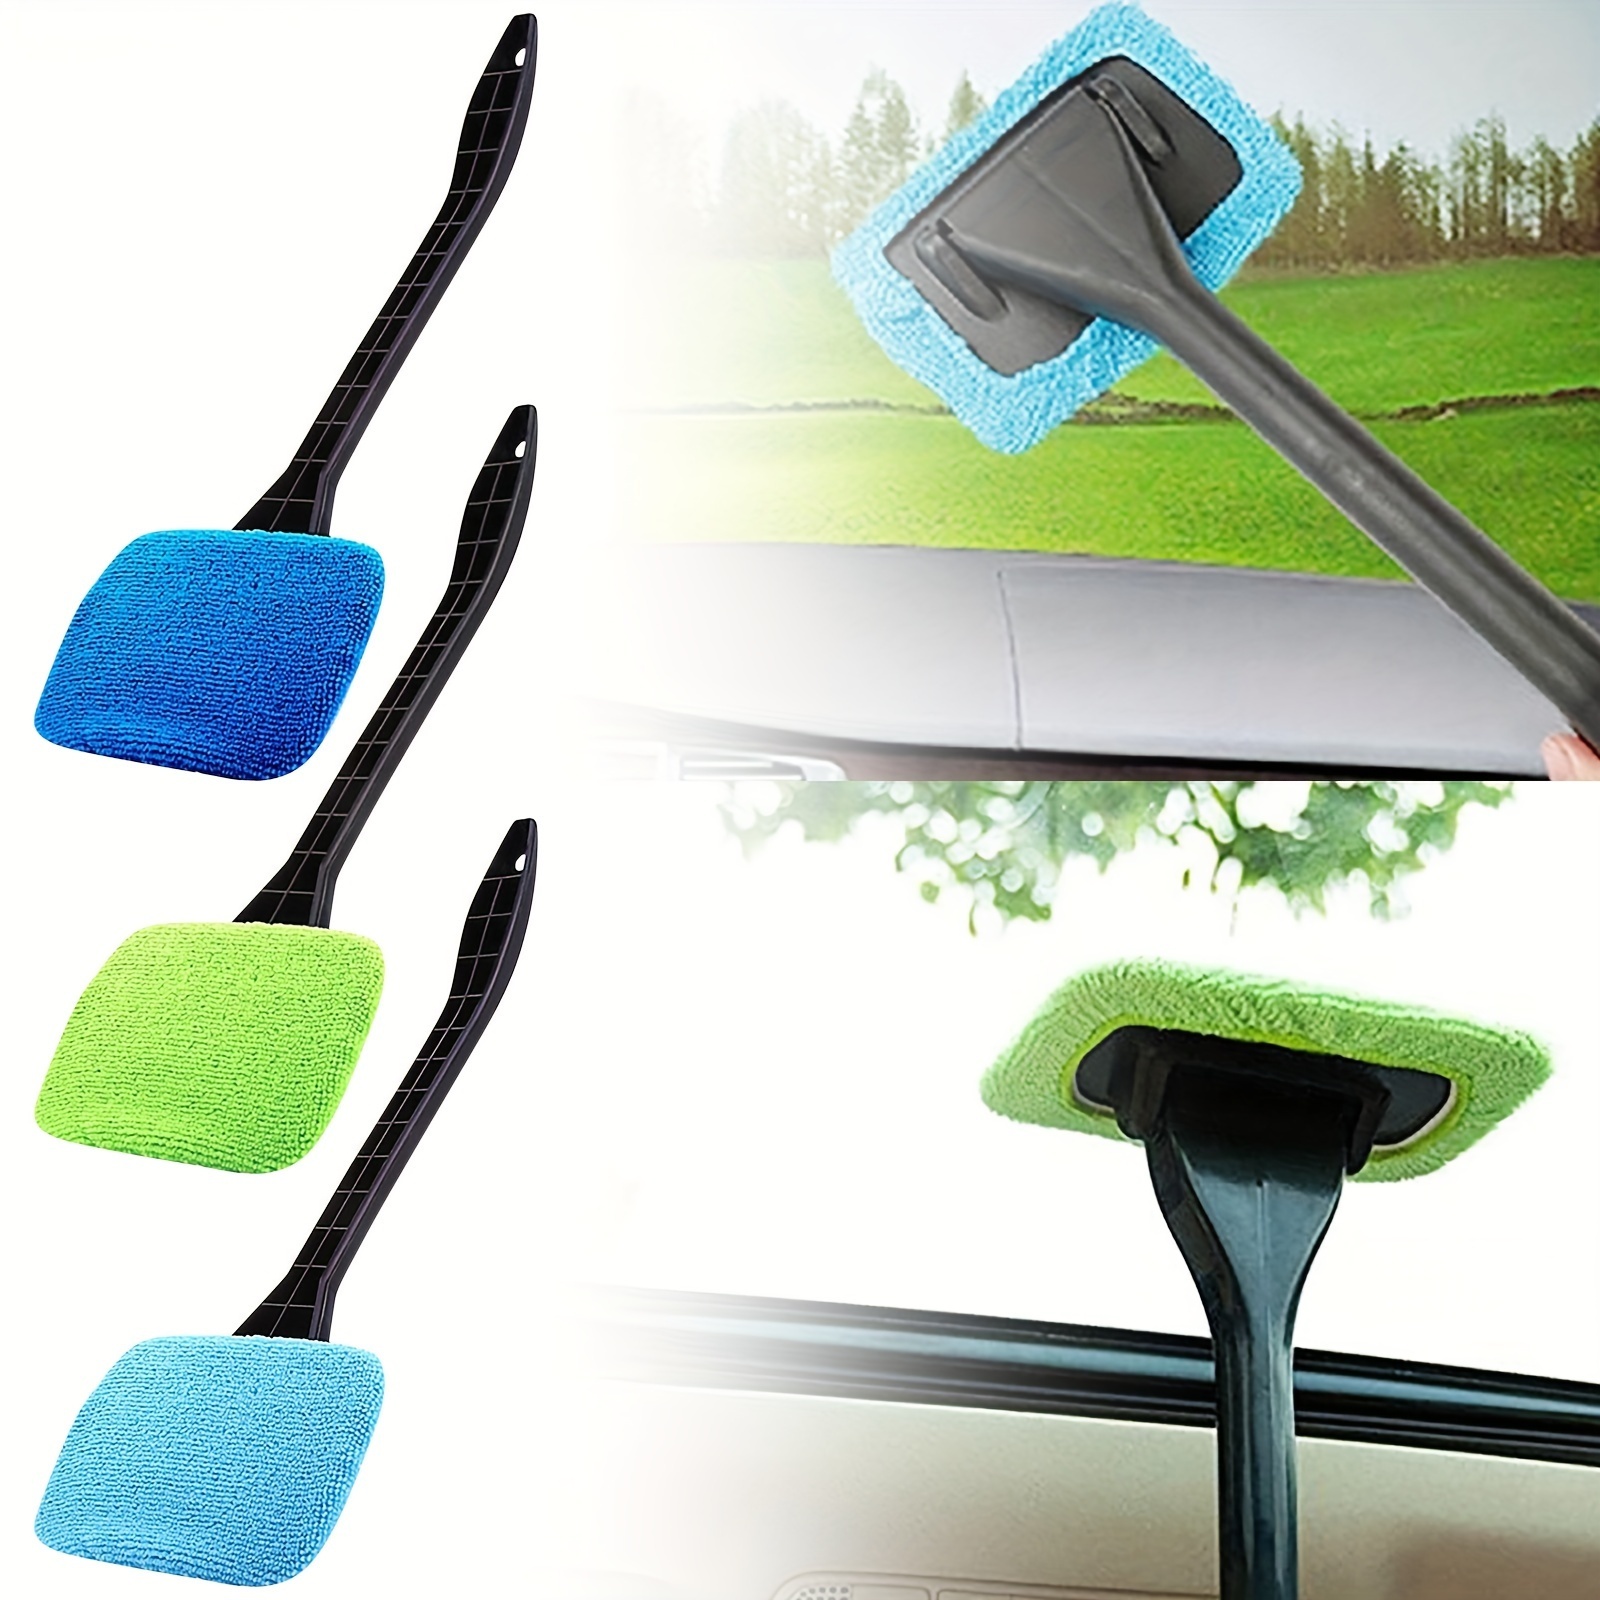 1 Car Window Cleaning Brush, Windshield Squeegee Scraper Wiper